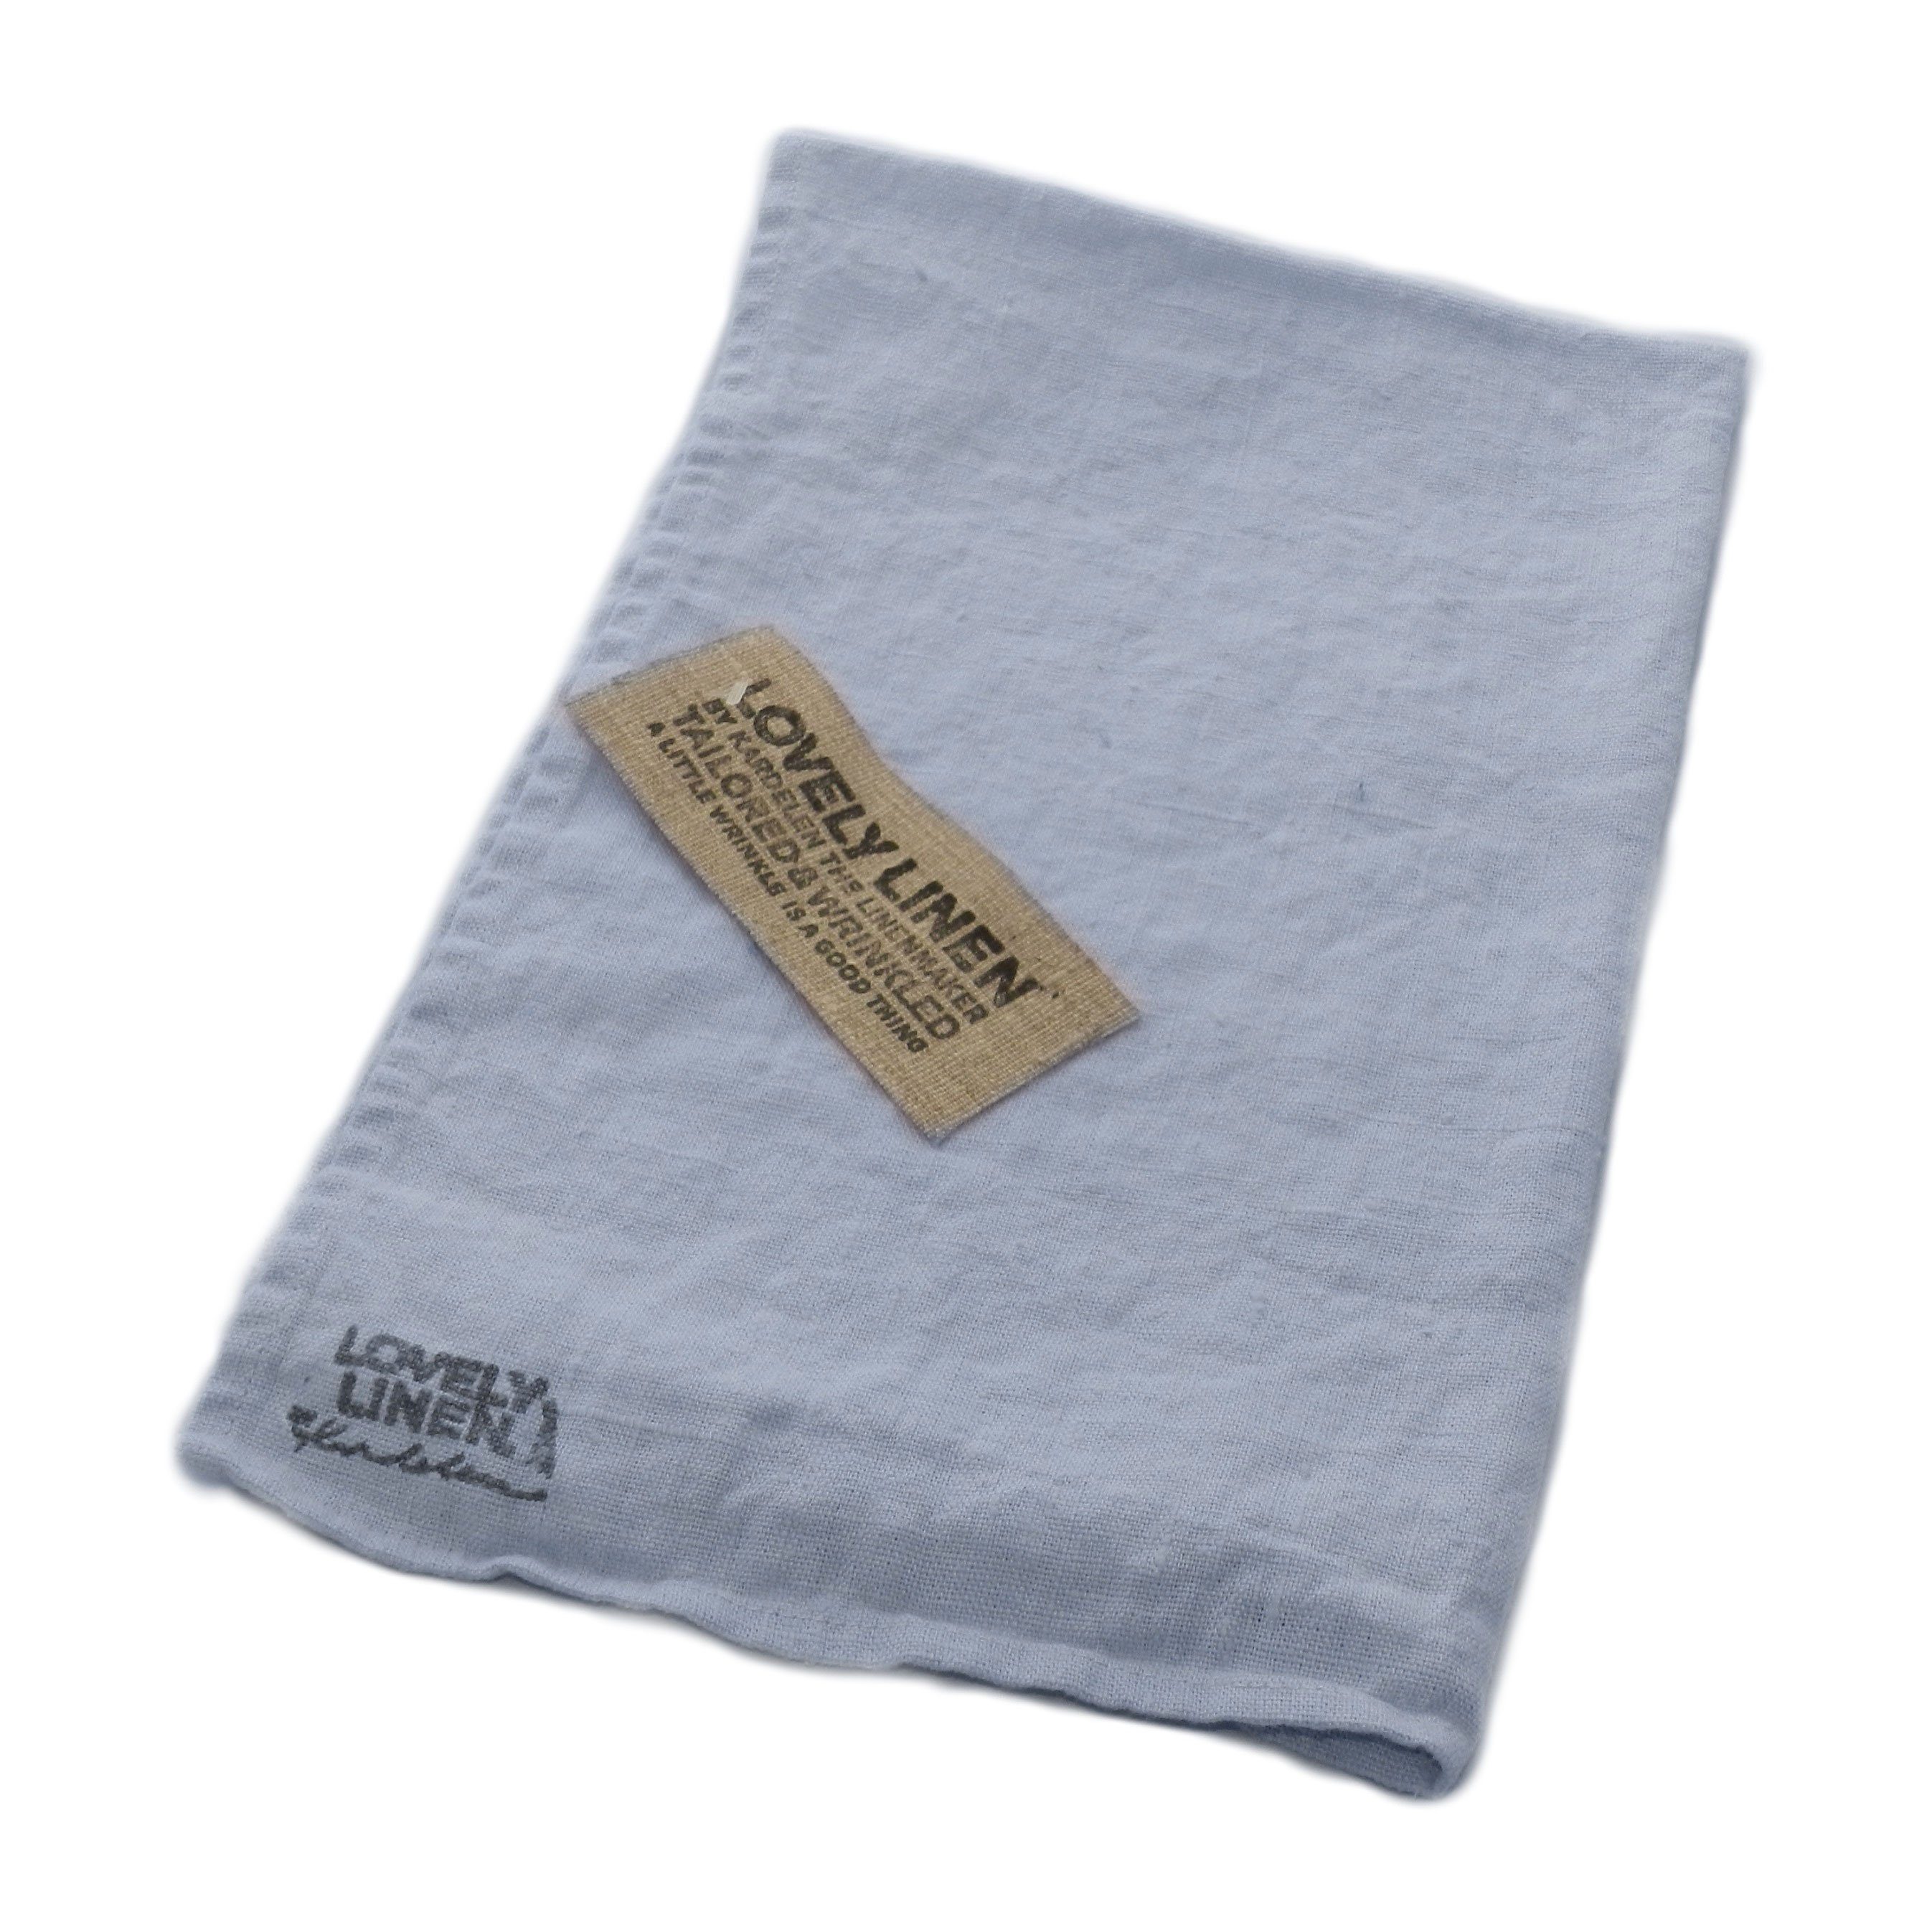 Lovely Linen Handtuch Lovely Linen Geschirrtuch 45 x 70 cm, 100% Leinen dusty blue | Alle Handtücher